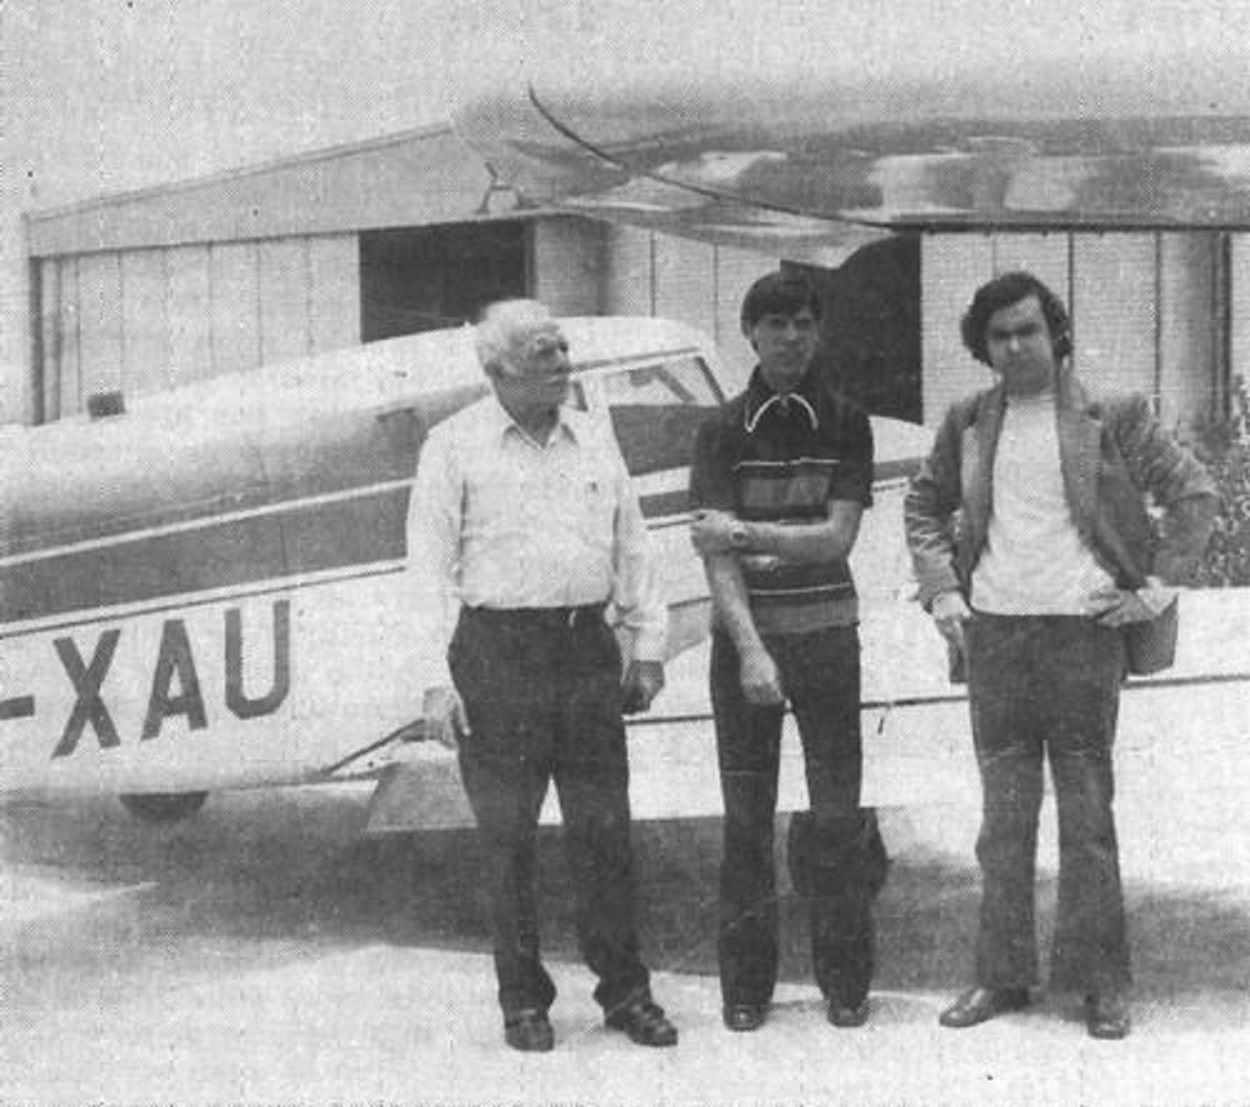 (From left to right) - Carlos' uncle, Ignacio la Mora, Carlos Montiel, and APRO Field Investigator F.I. Fernando Pareja.